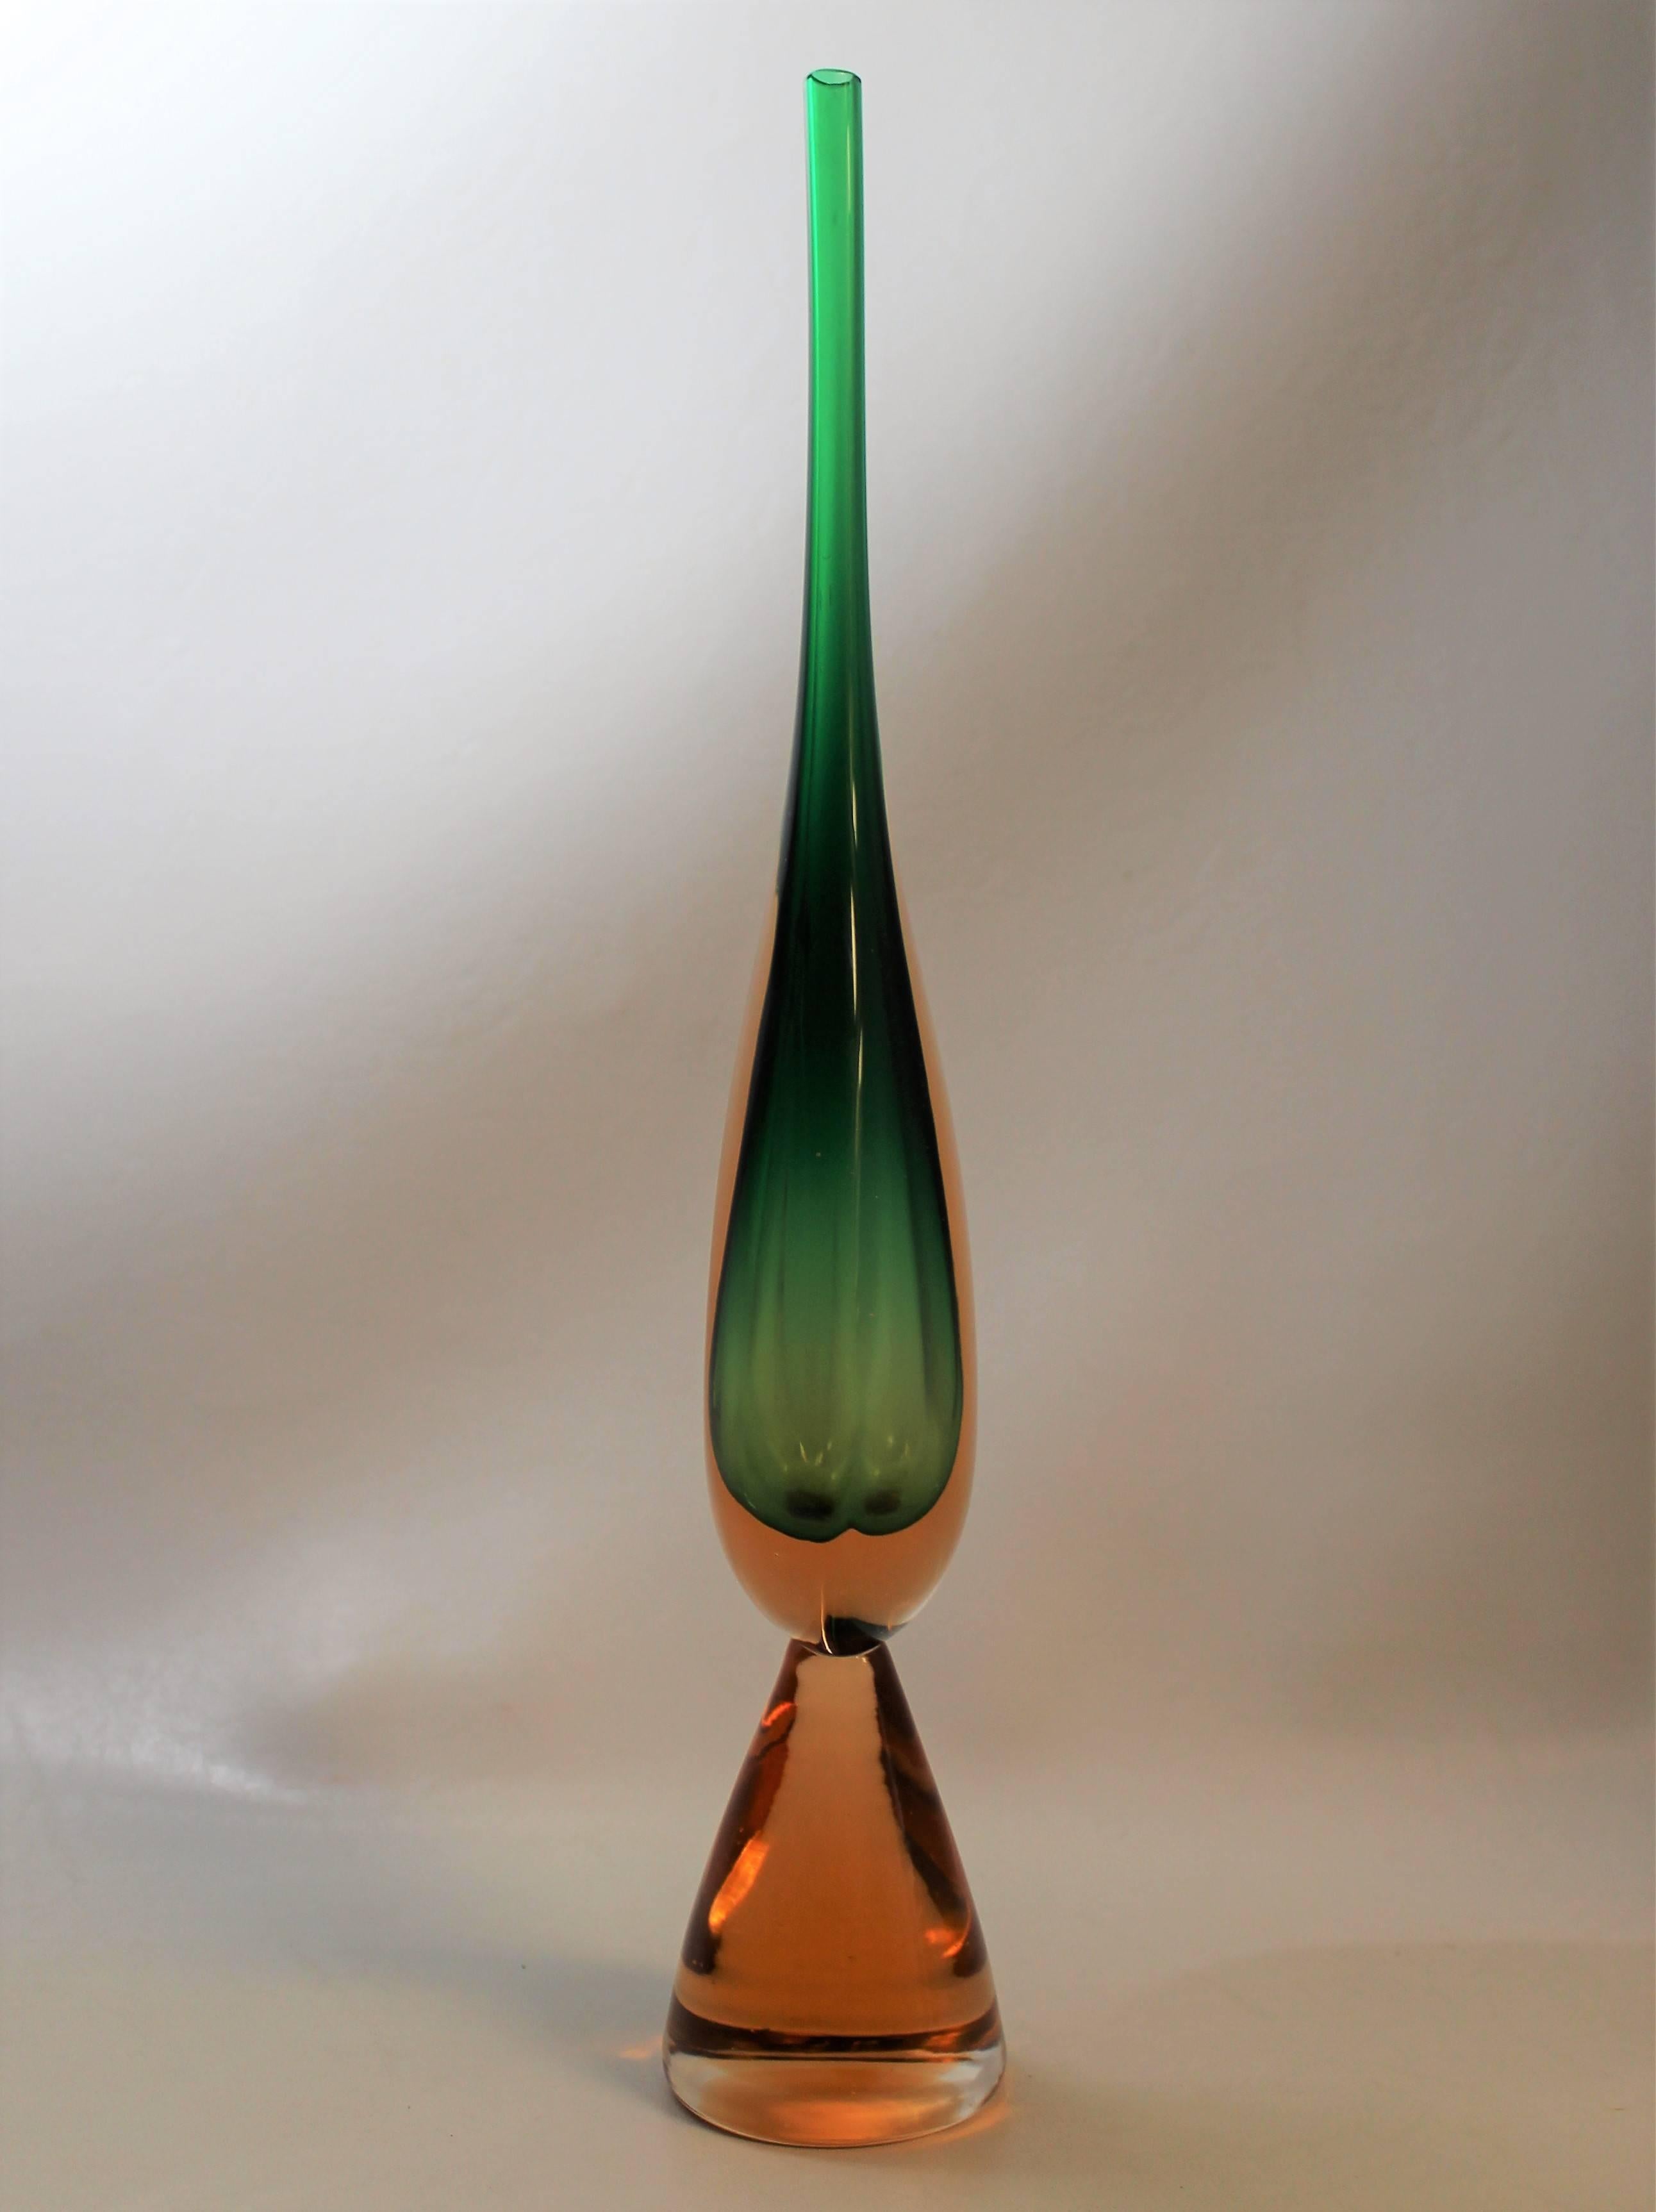 "Sommerso" Murano glass vase by Luciano Gaspari for Salviati.